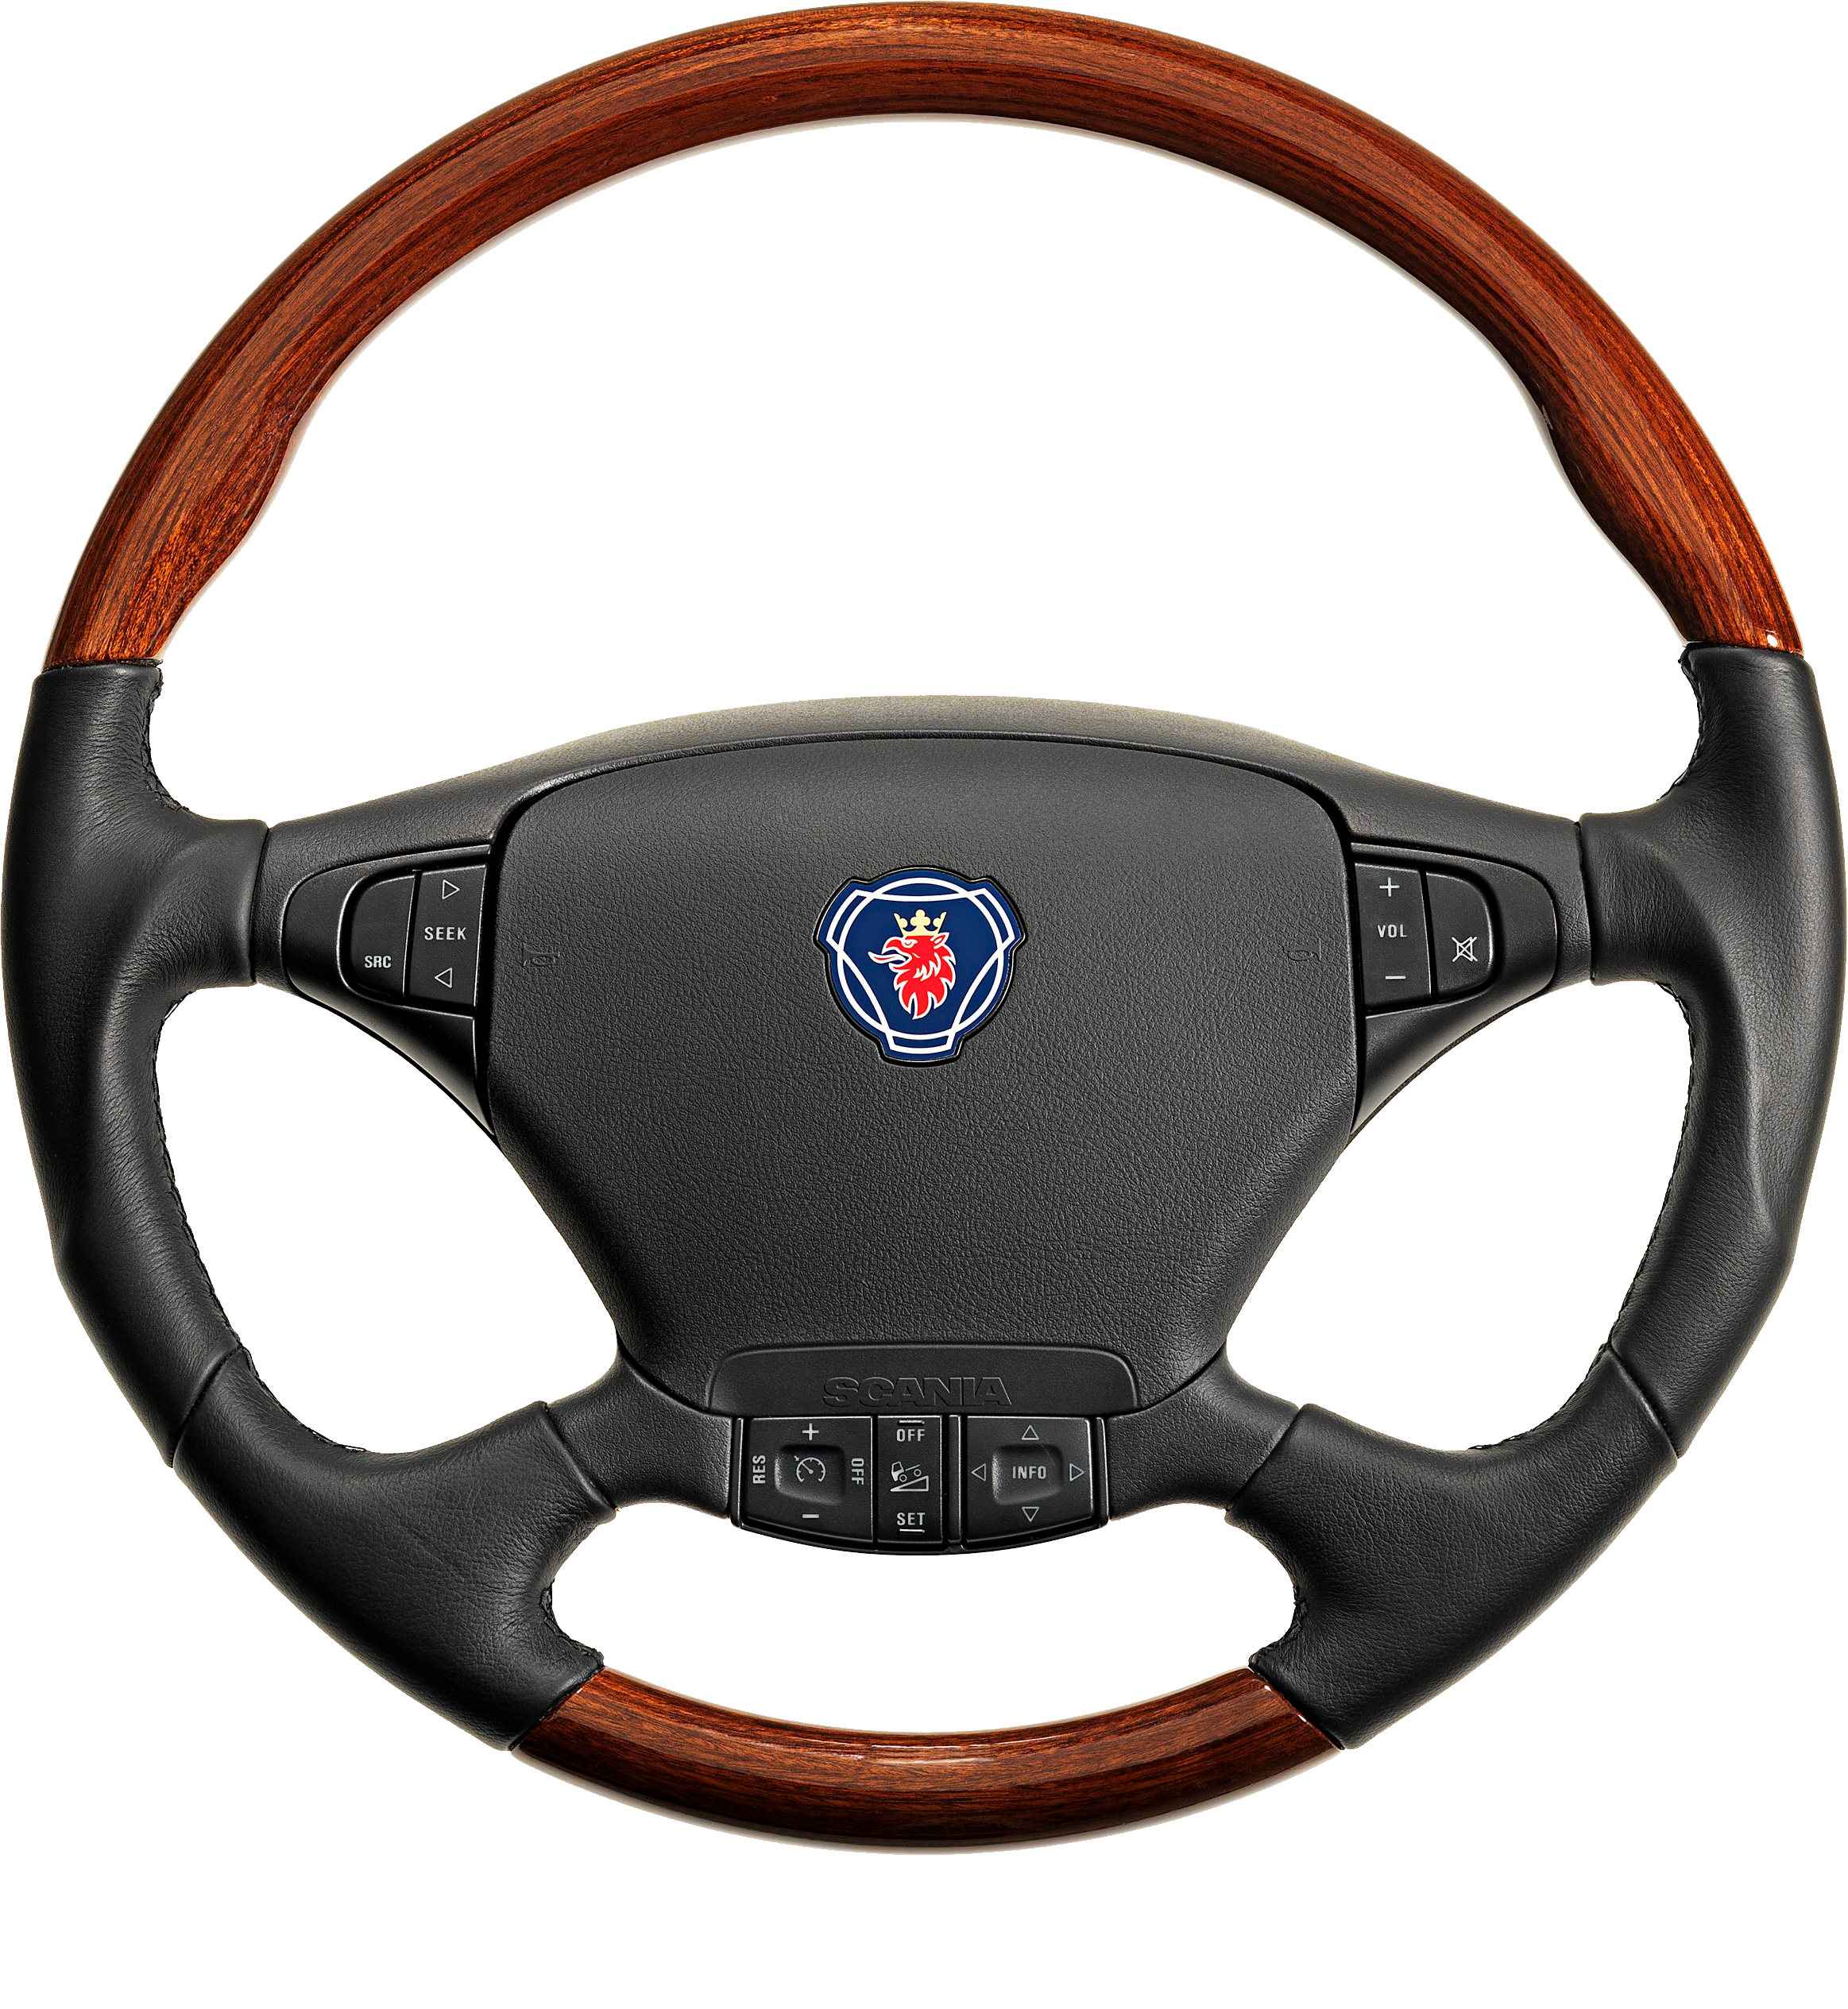 Steering Wheel PNG HD Image